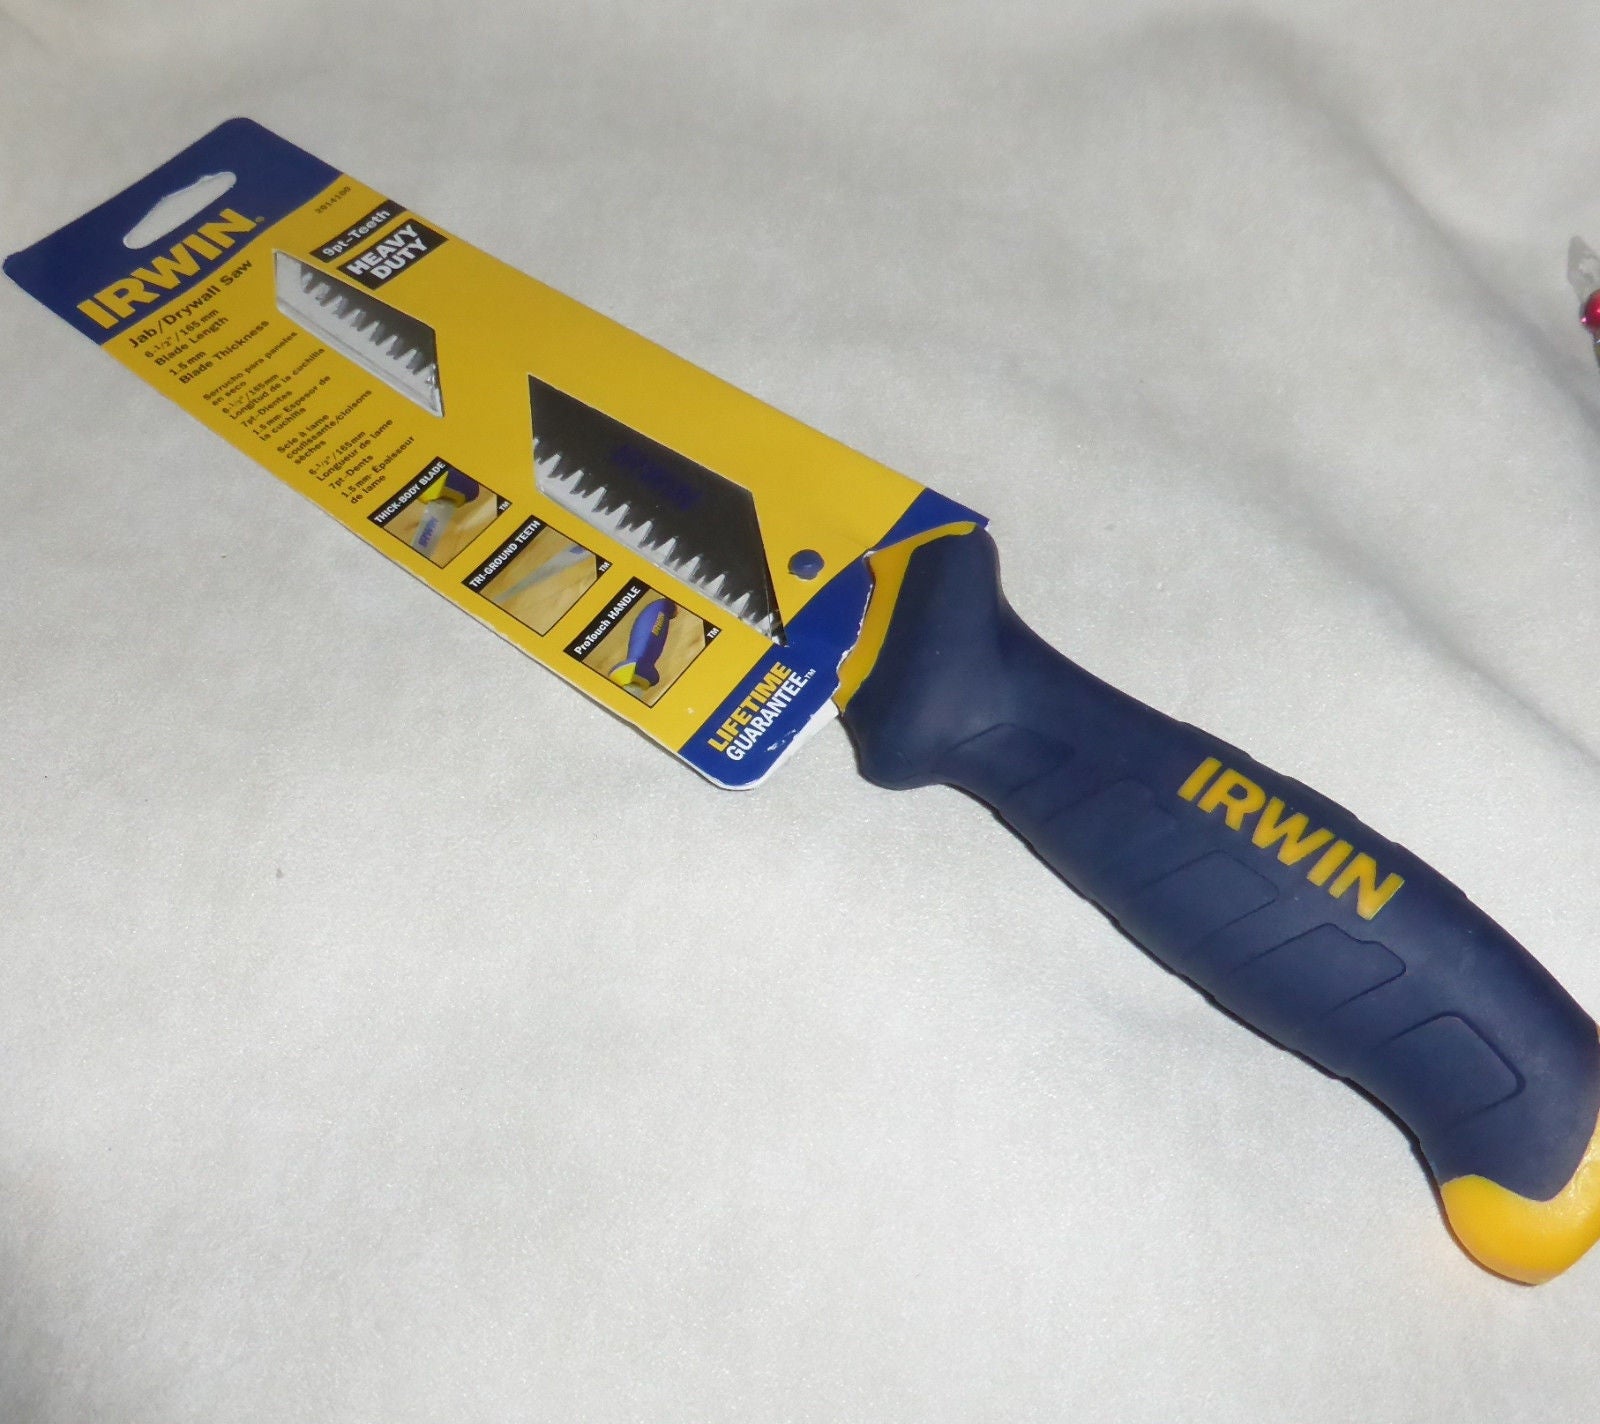 Irwin 2014100 6-1/2" 9Pt-Teeth Jab / Drywall Saw (Carded)